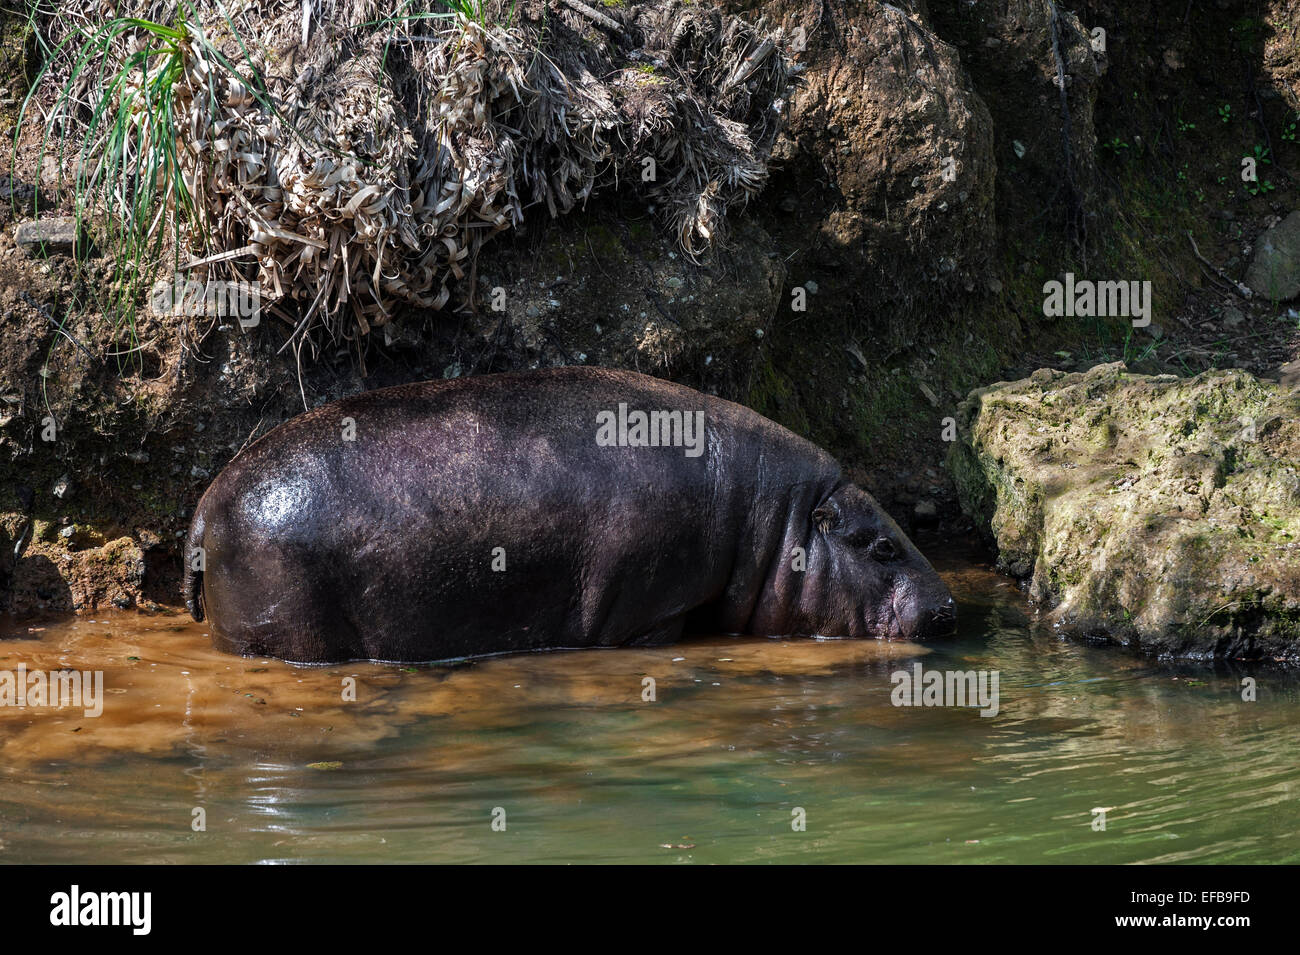 (Hippopotame pygmée Choeropsis liberiensis / Hexaprotodon liberiensis), le long de la Banque mondiale, originaire d'Afrique de l'Ouest Banque D'Images